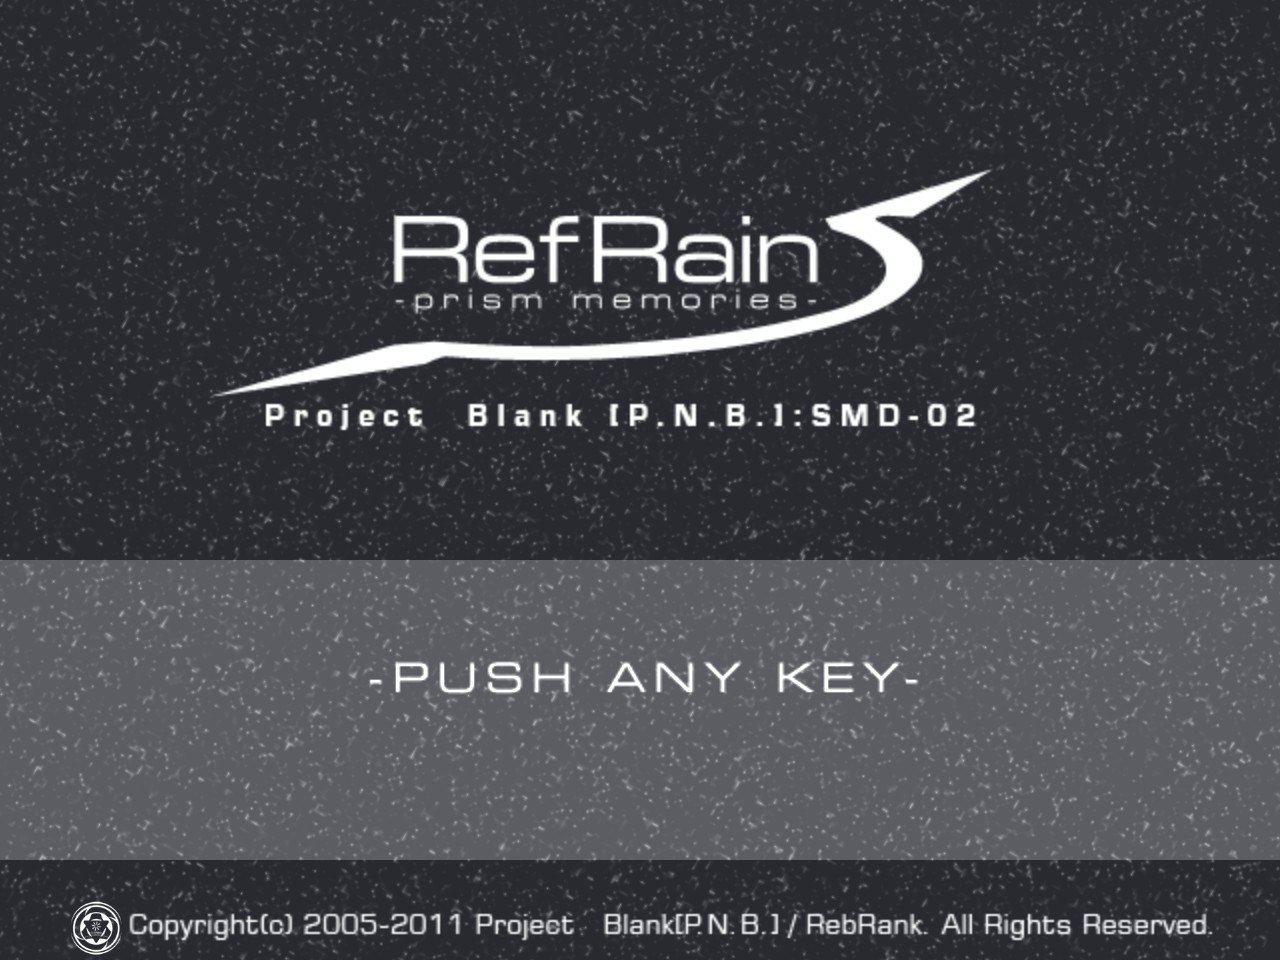 RefRain - prism memories - screenshot